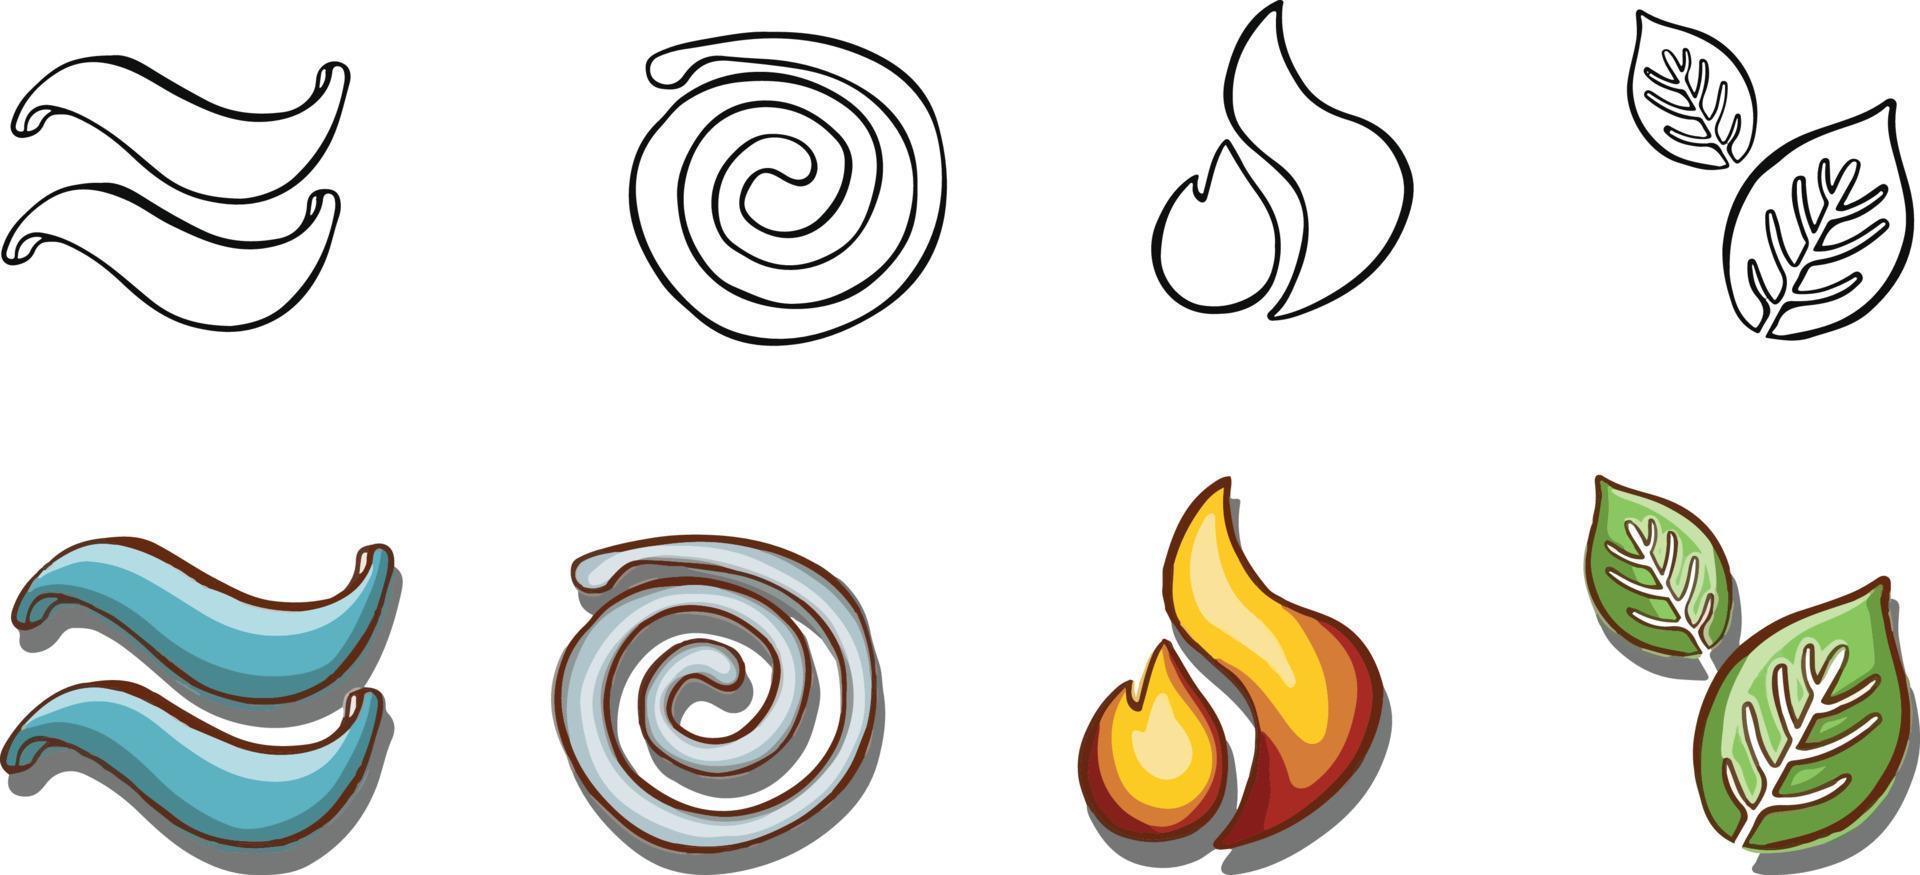 reeks van symbolen van de elementen, lucht, water, aarde, brand. hand- getrokken structuur vector